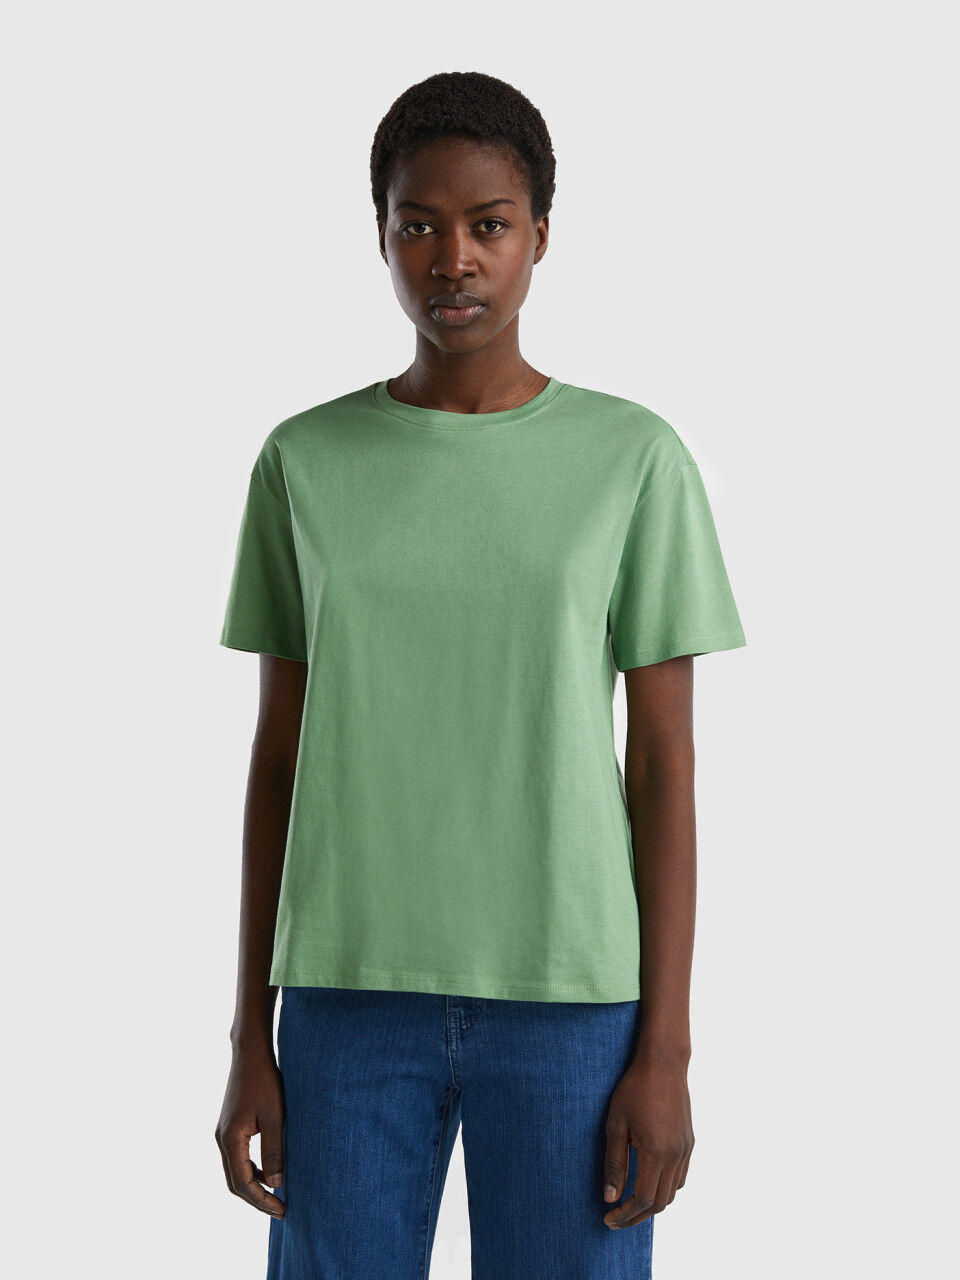 Short sleeve 100% cotton t-shirt